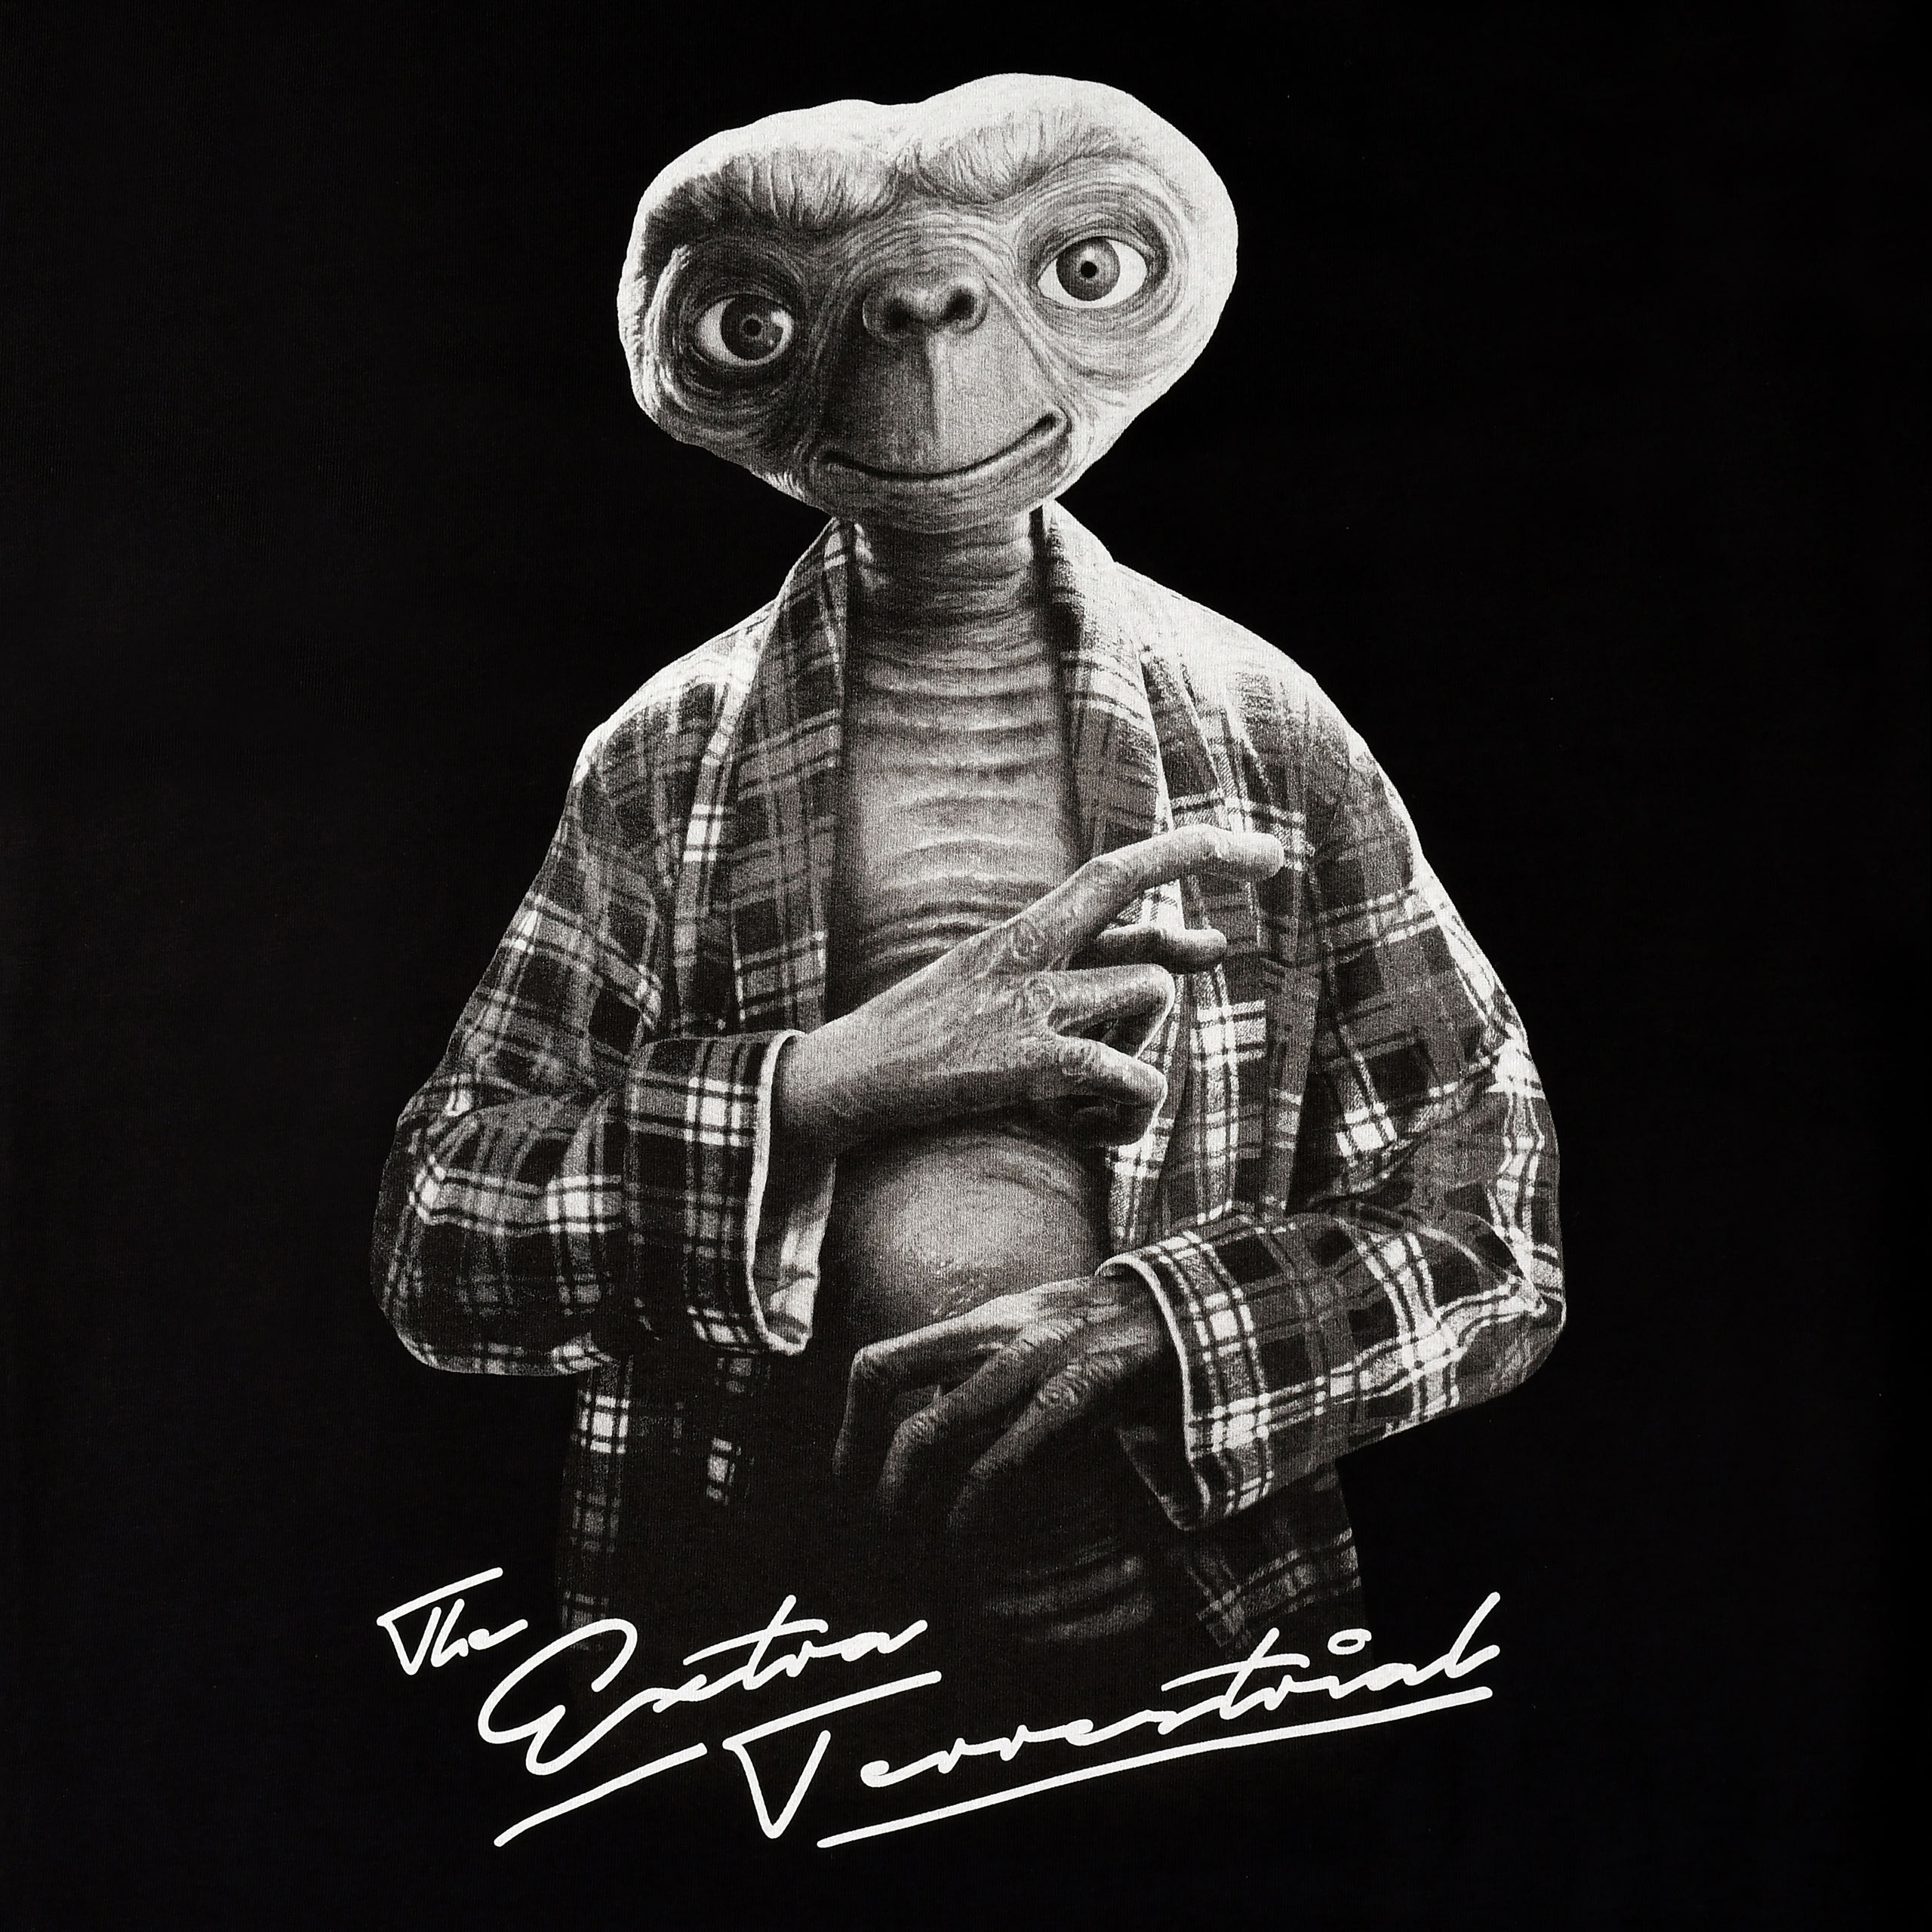 E.T. - Monochrome Character T-Shirt Black